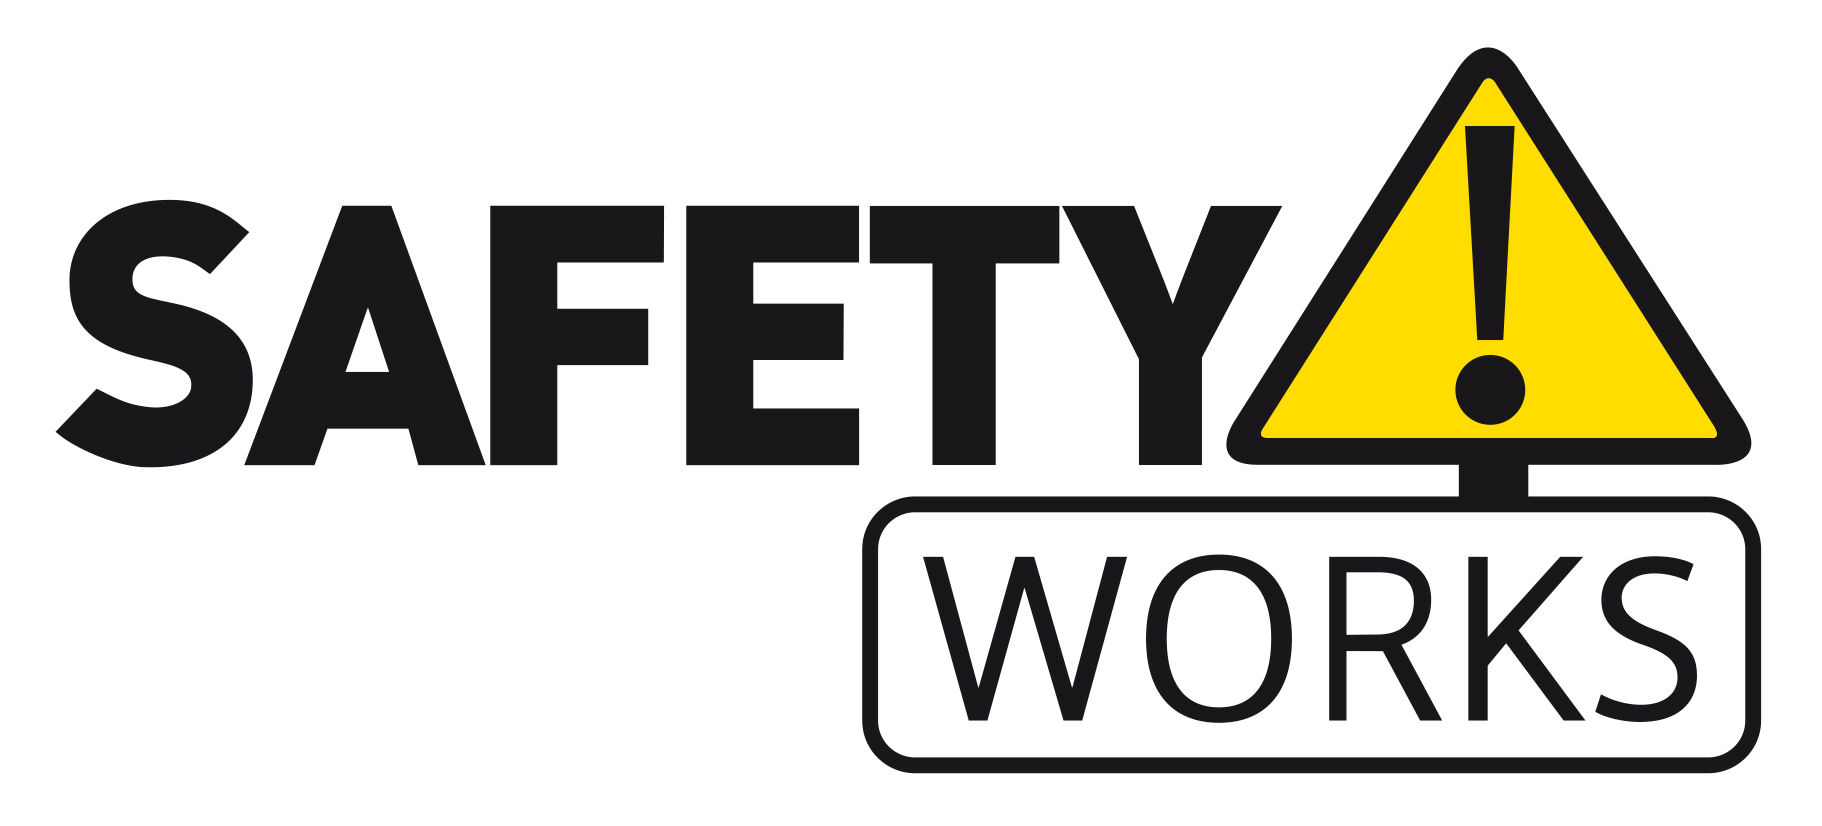 SafetyWorks! logo